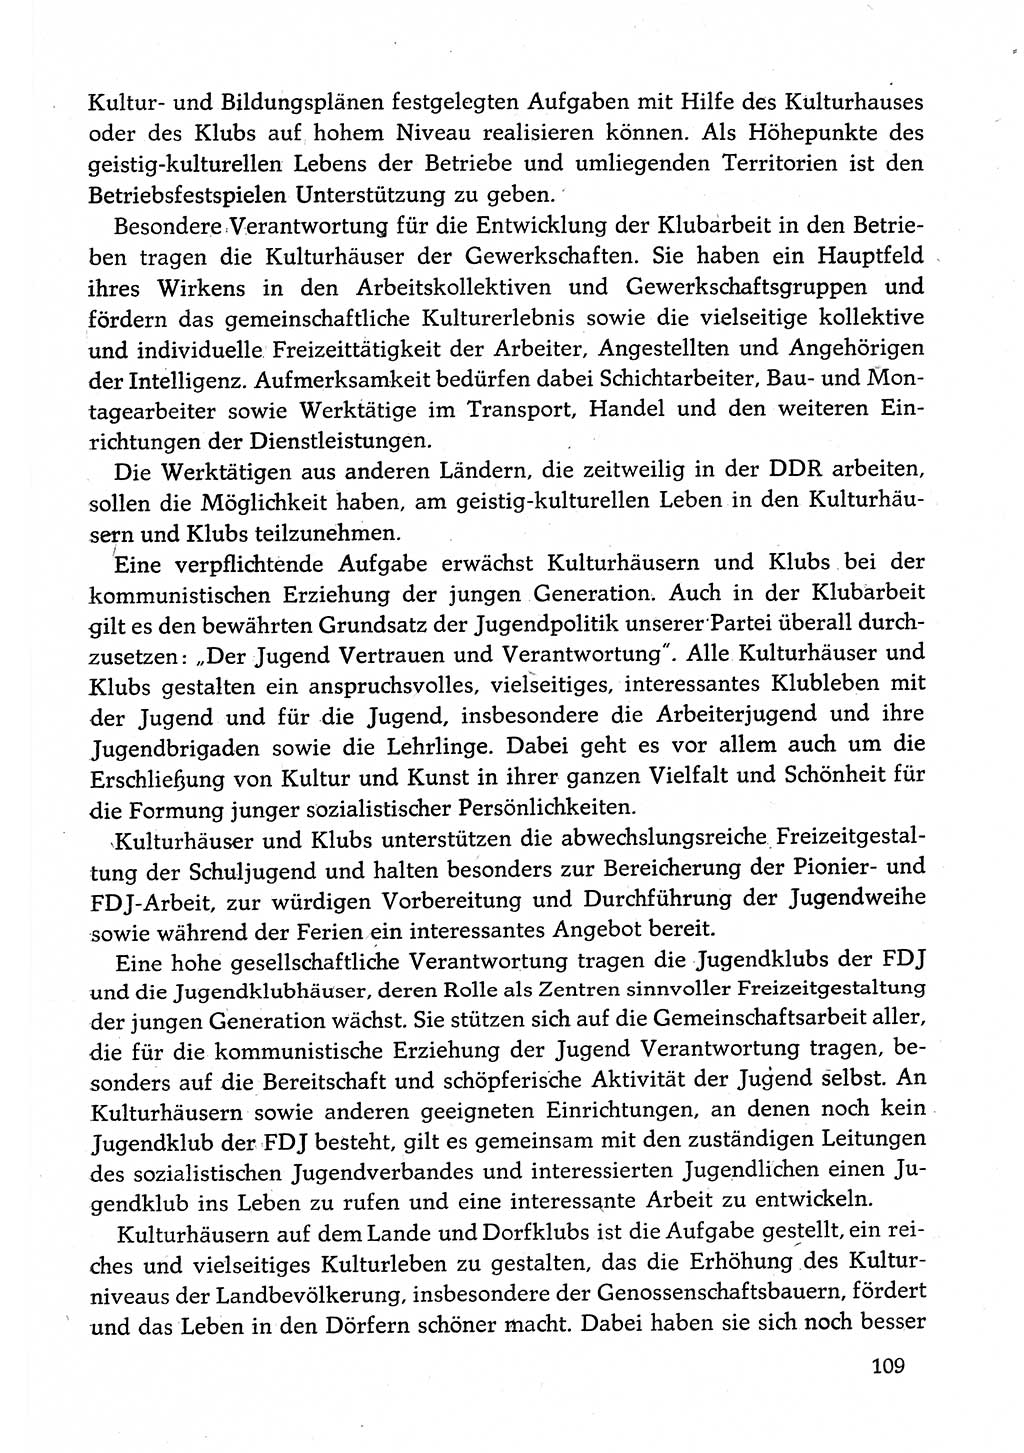 Dokumente der Sozialistischen Einheitspartei Deutschlands (SED) [Deutsche Demokratische Republik (DDR)] 1982-1983, Seite 109 (Dok. SED DDR 1982-1983, S. 109)